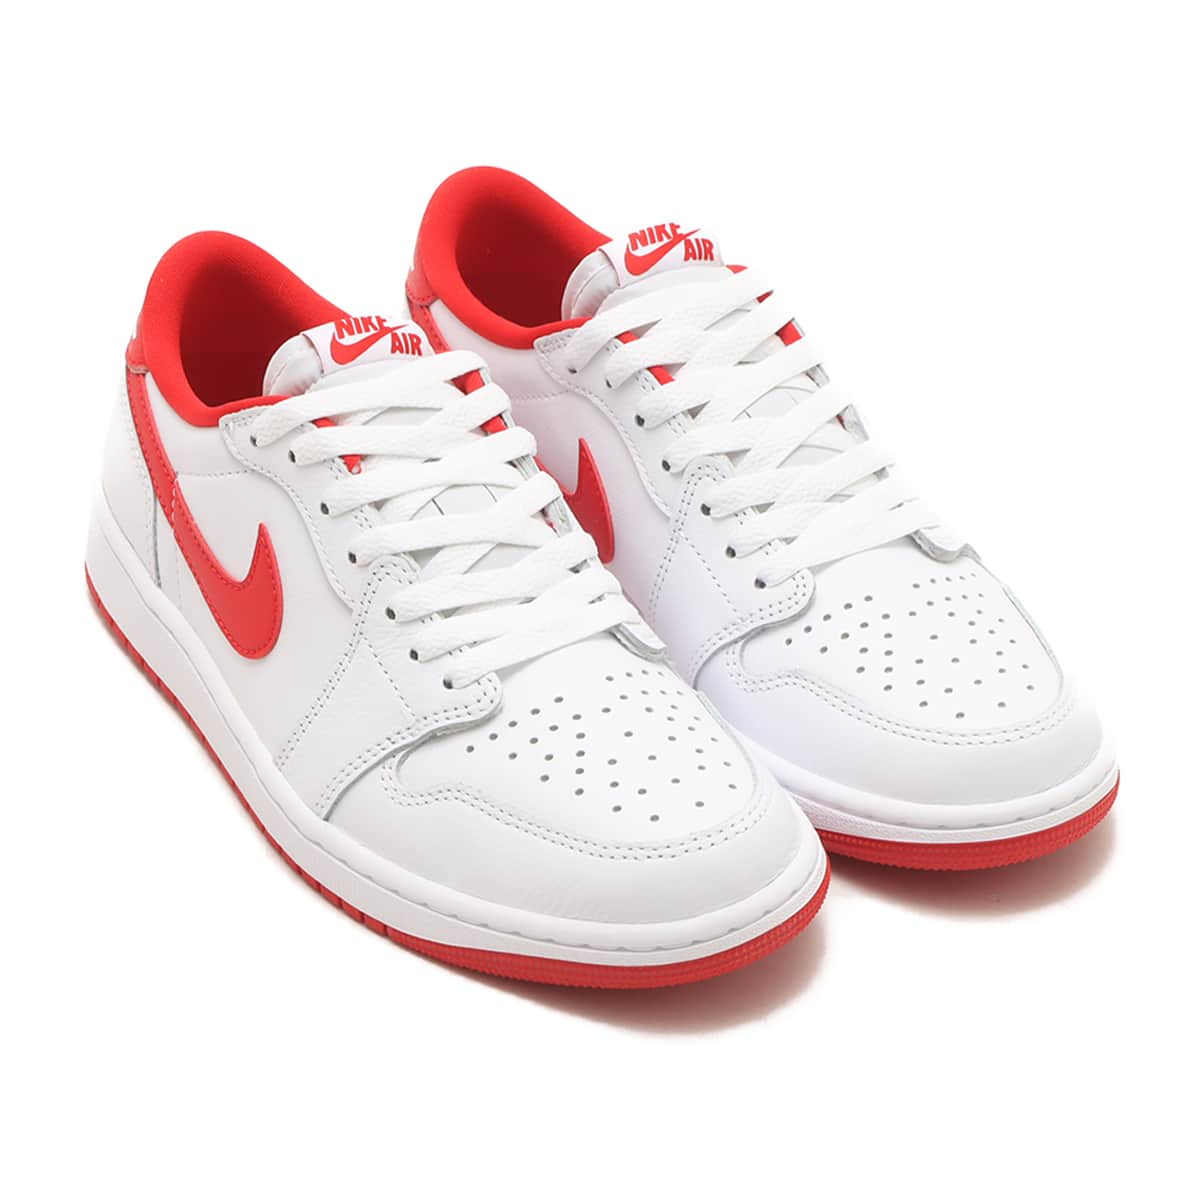 Nike Air Jordan 1 Retro Low OG White Red